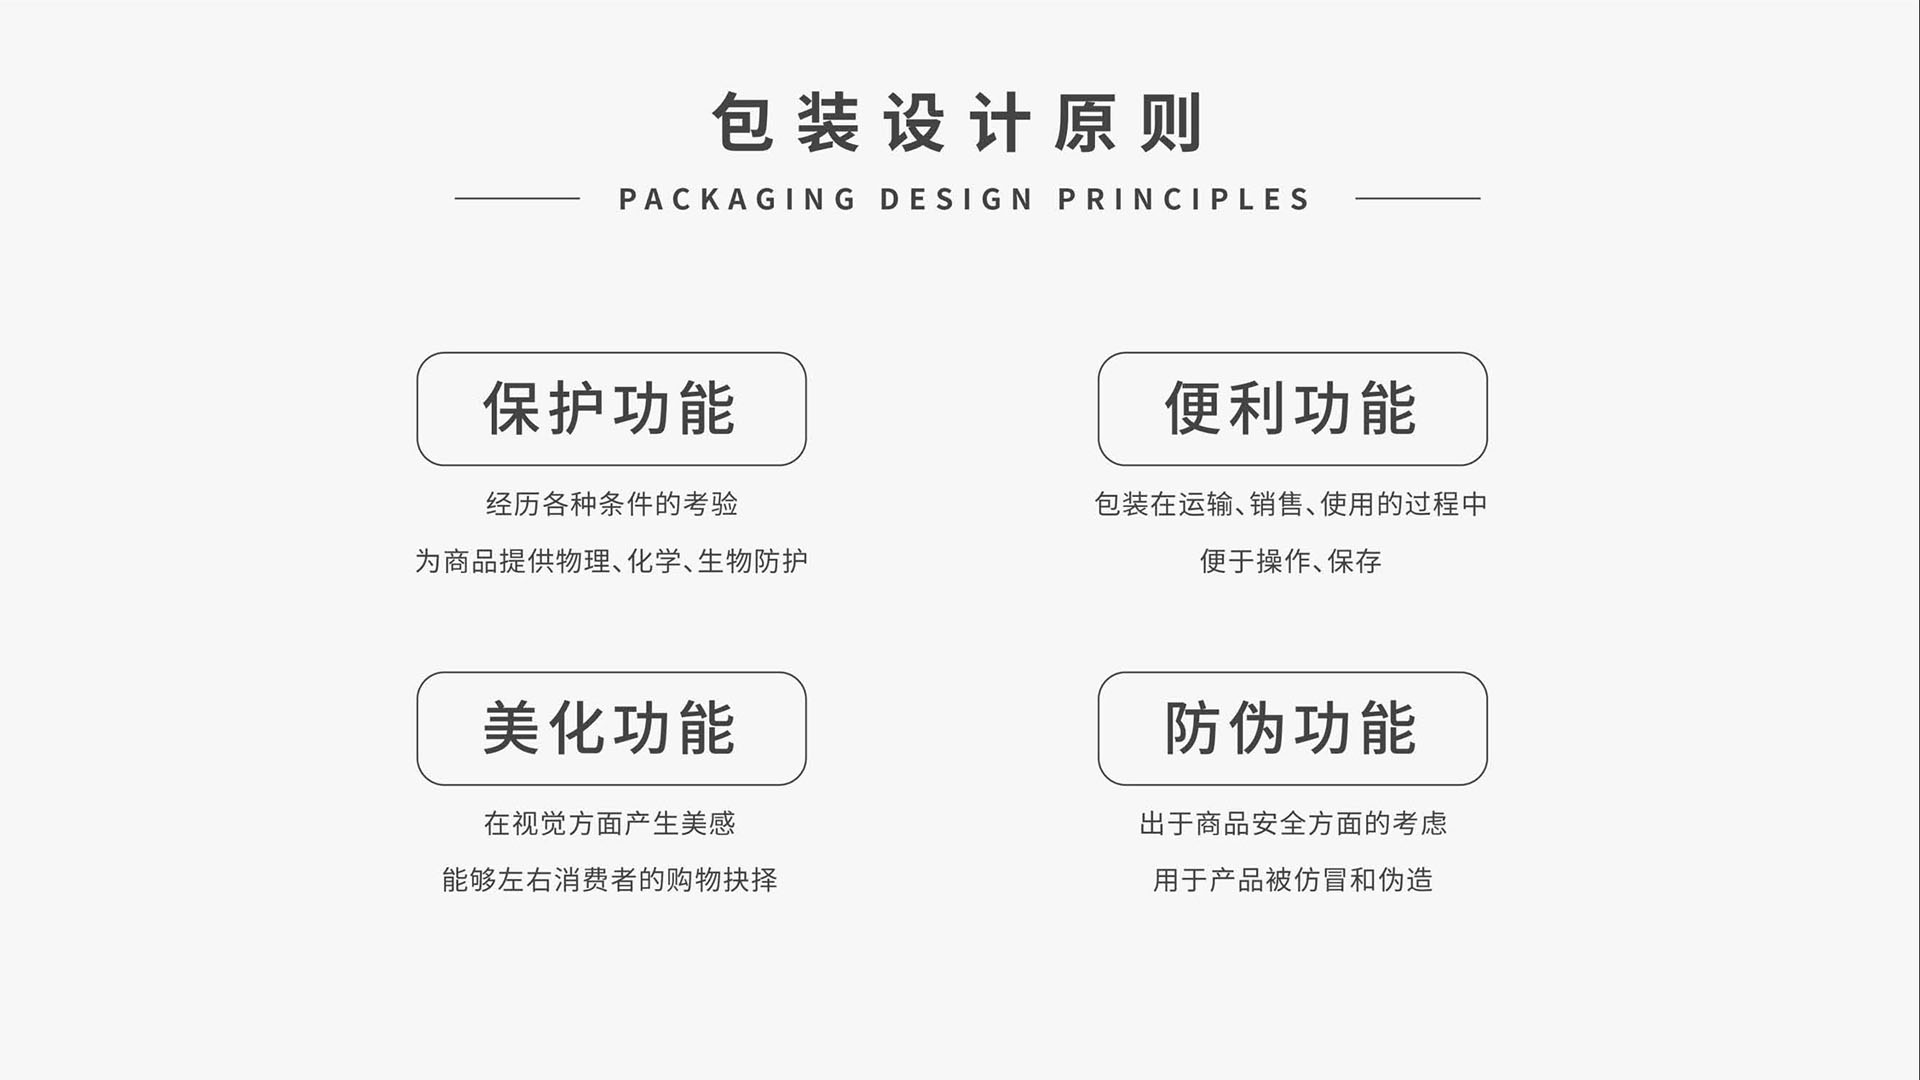 电子烟包装策划设计案例图片-深圳健怡（全喜HAPE）